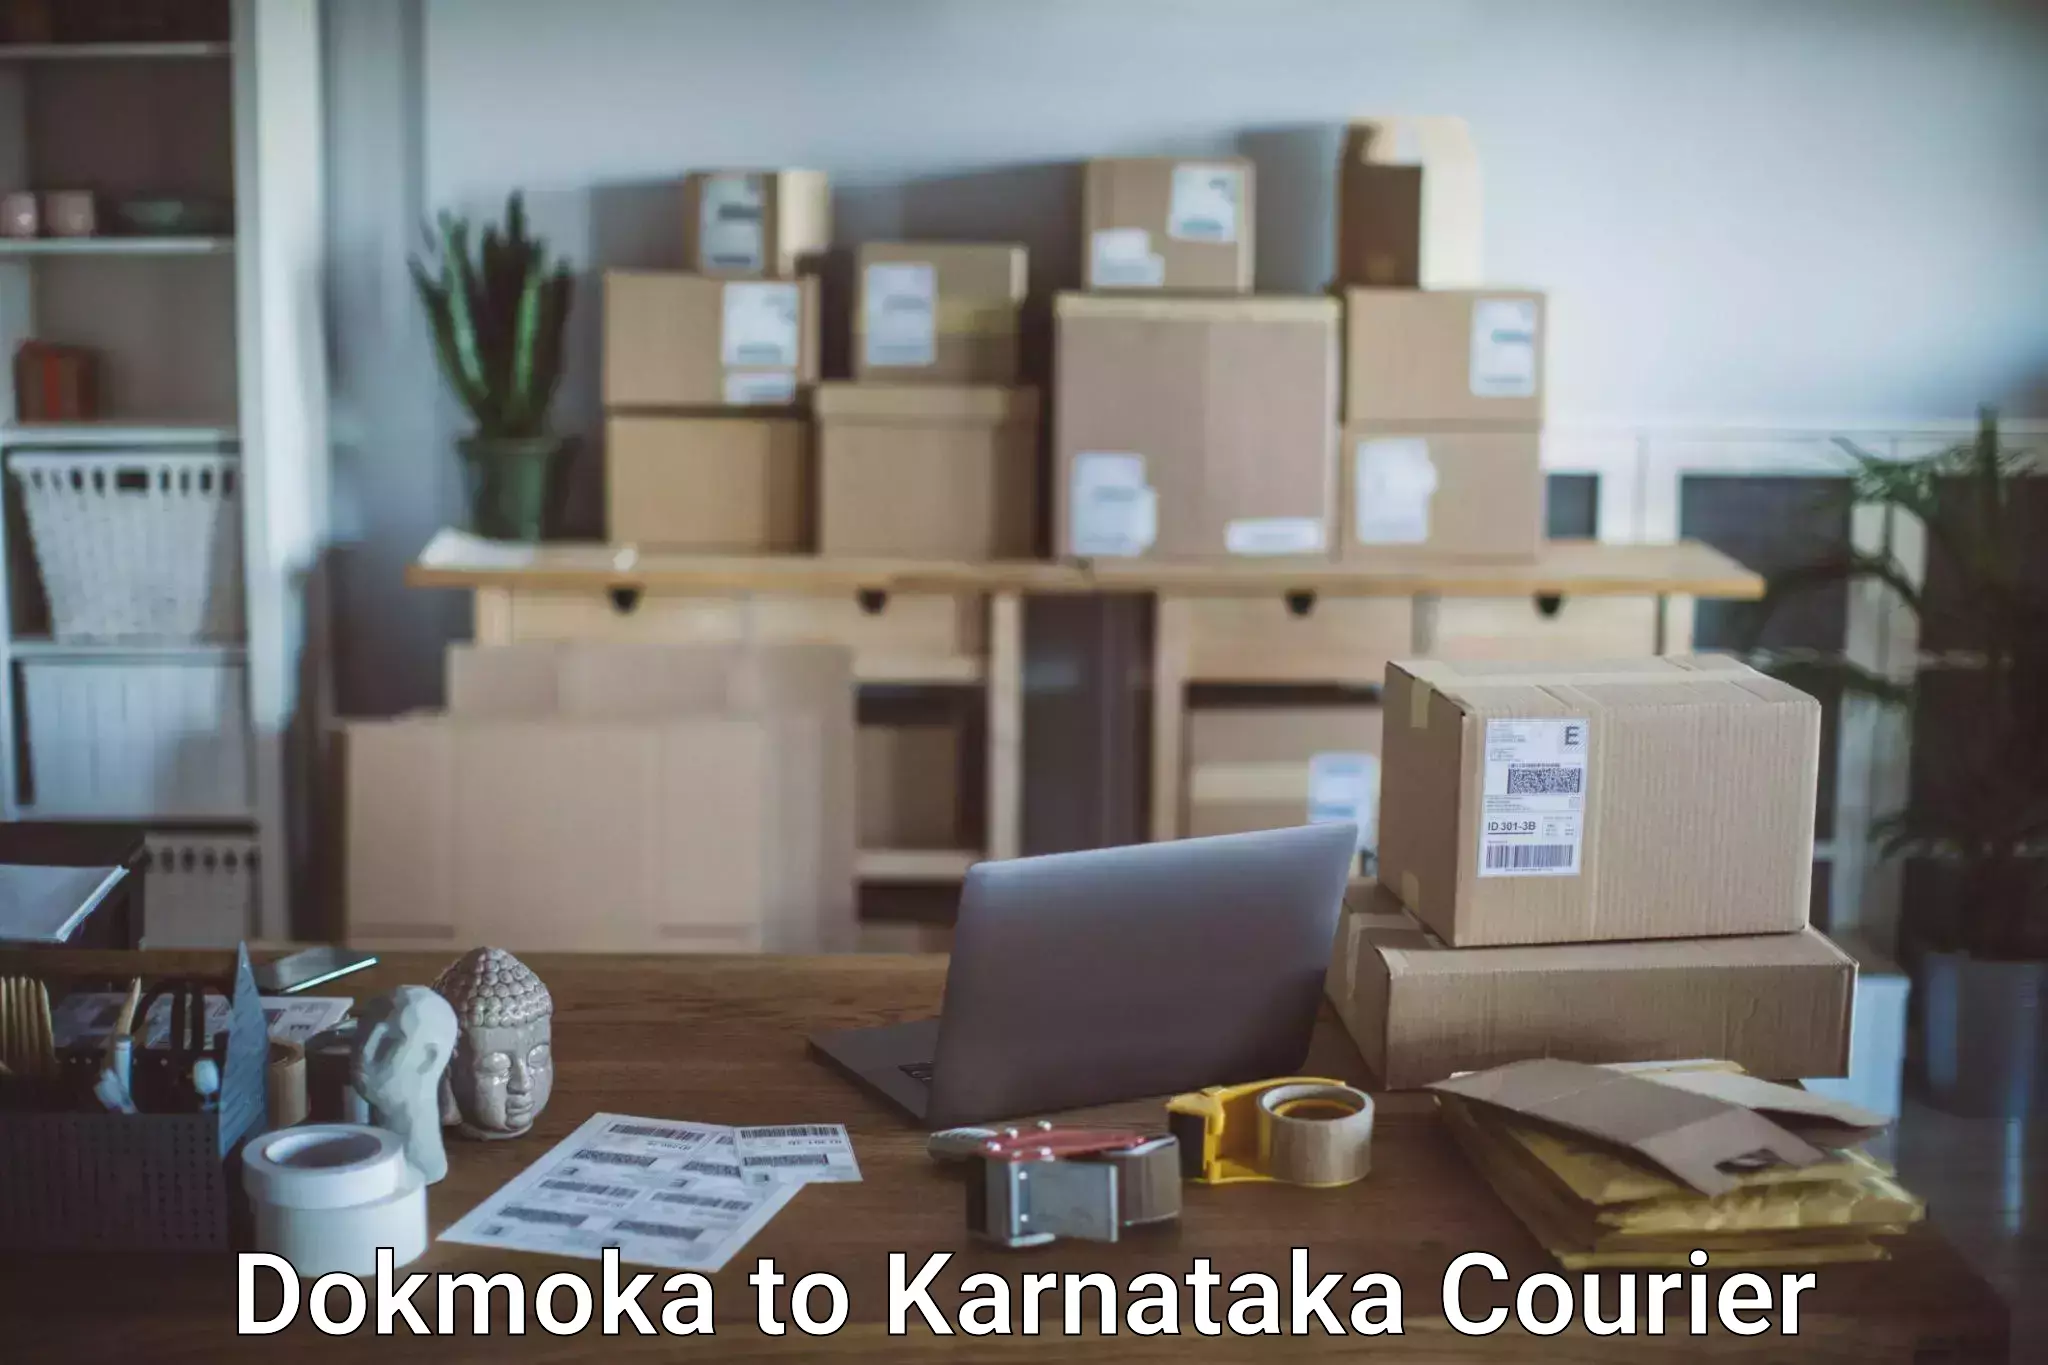 Airport luggage delivery Dokmoka to Karnataka